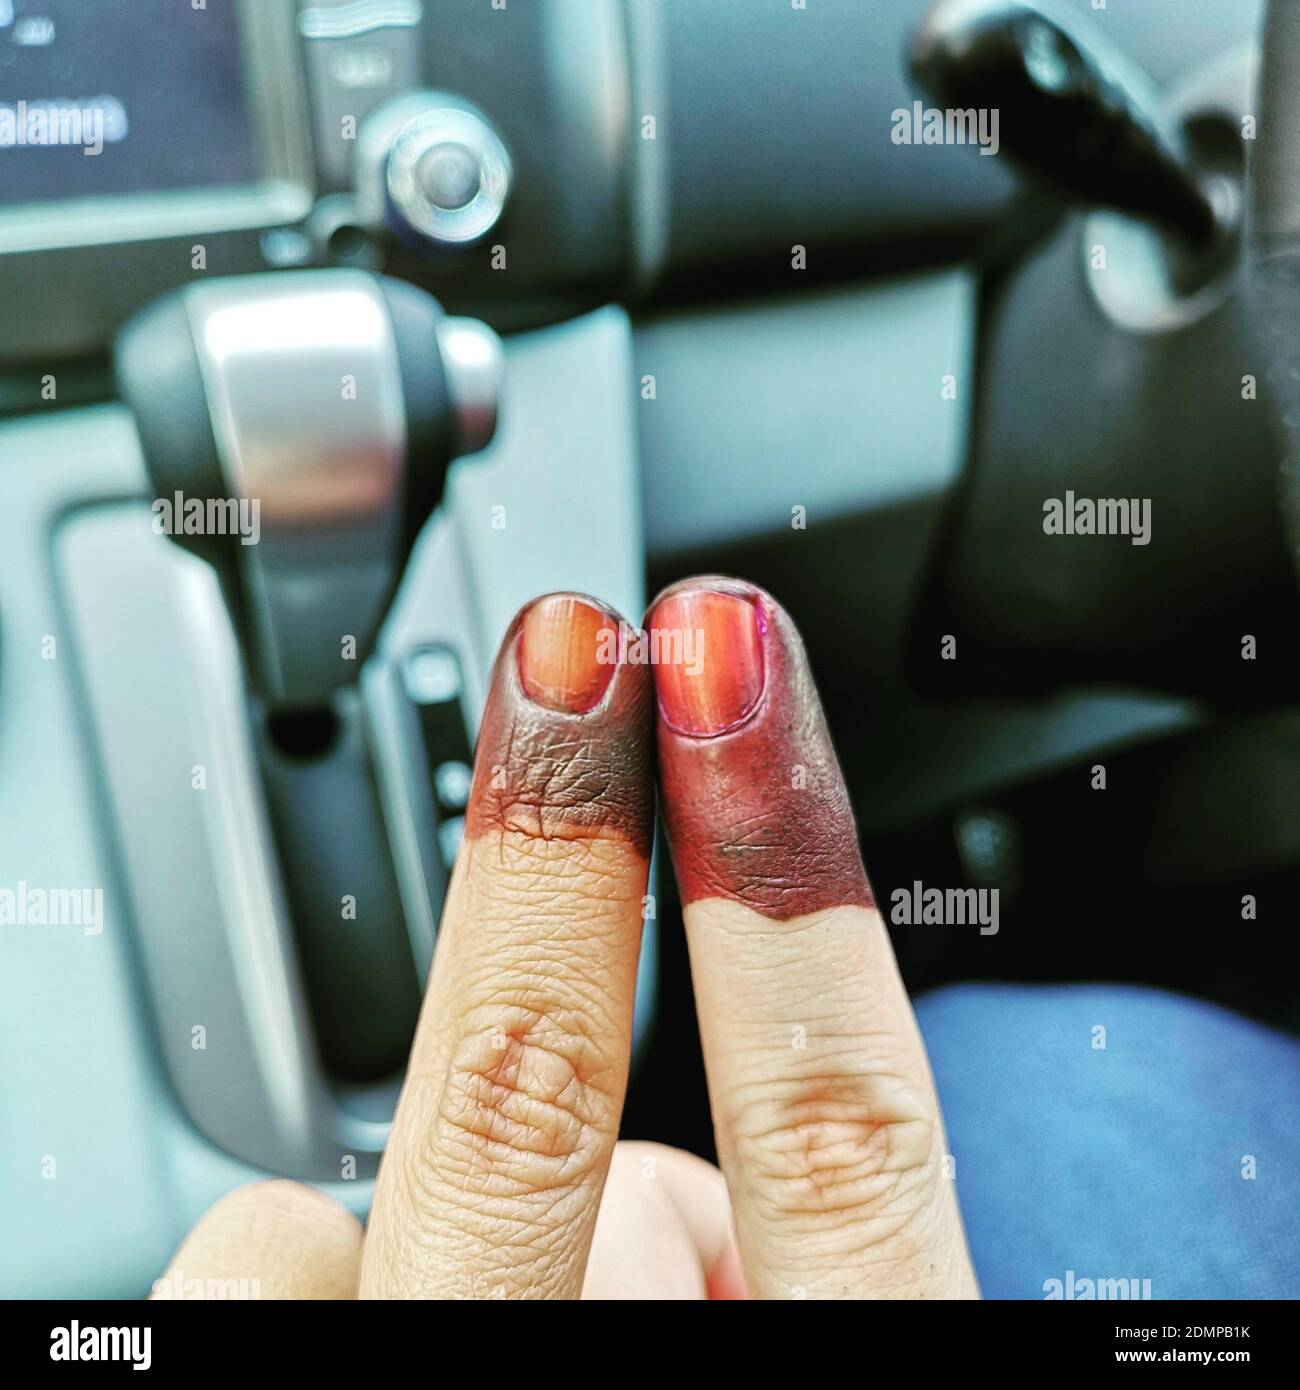 Fingern im auto